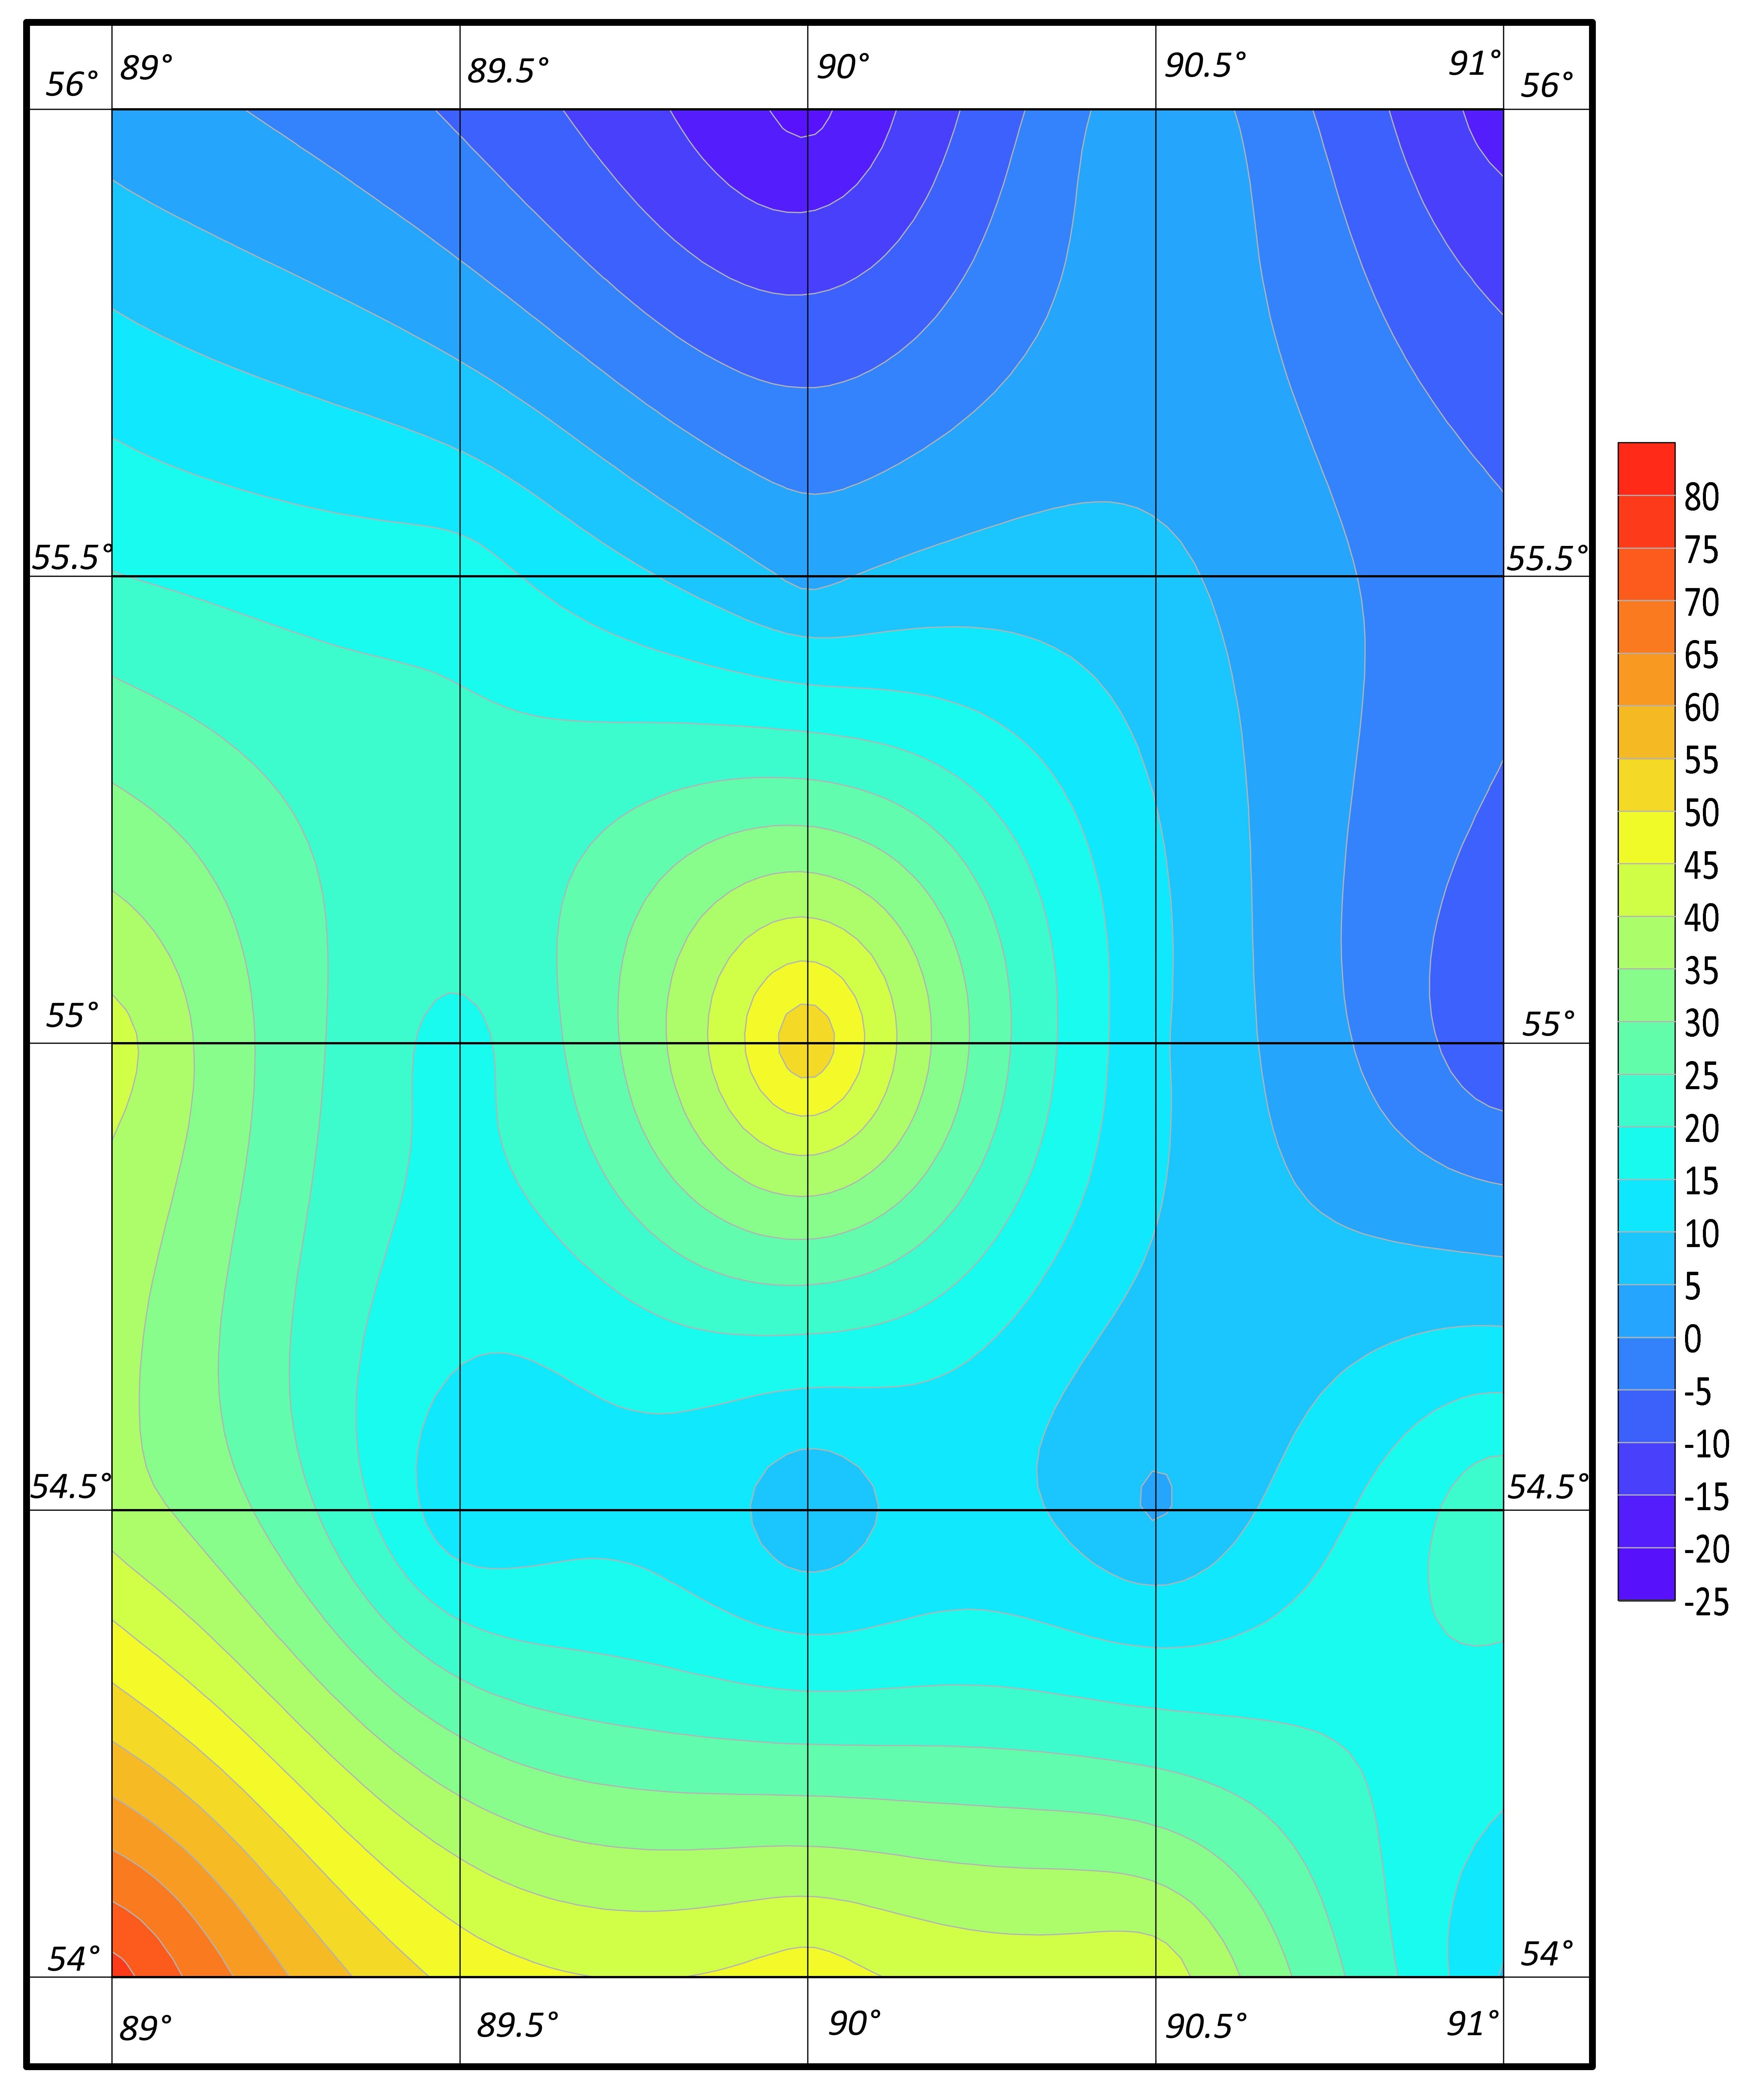 Гравиметрическая карта аномалий силы тяжести с редукцией в свободном воздухе, созданная с помощью пакета машинной графики